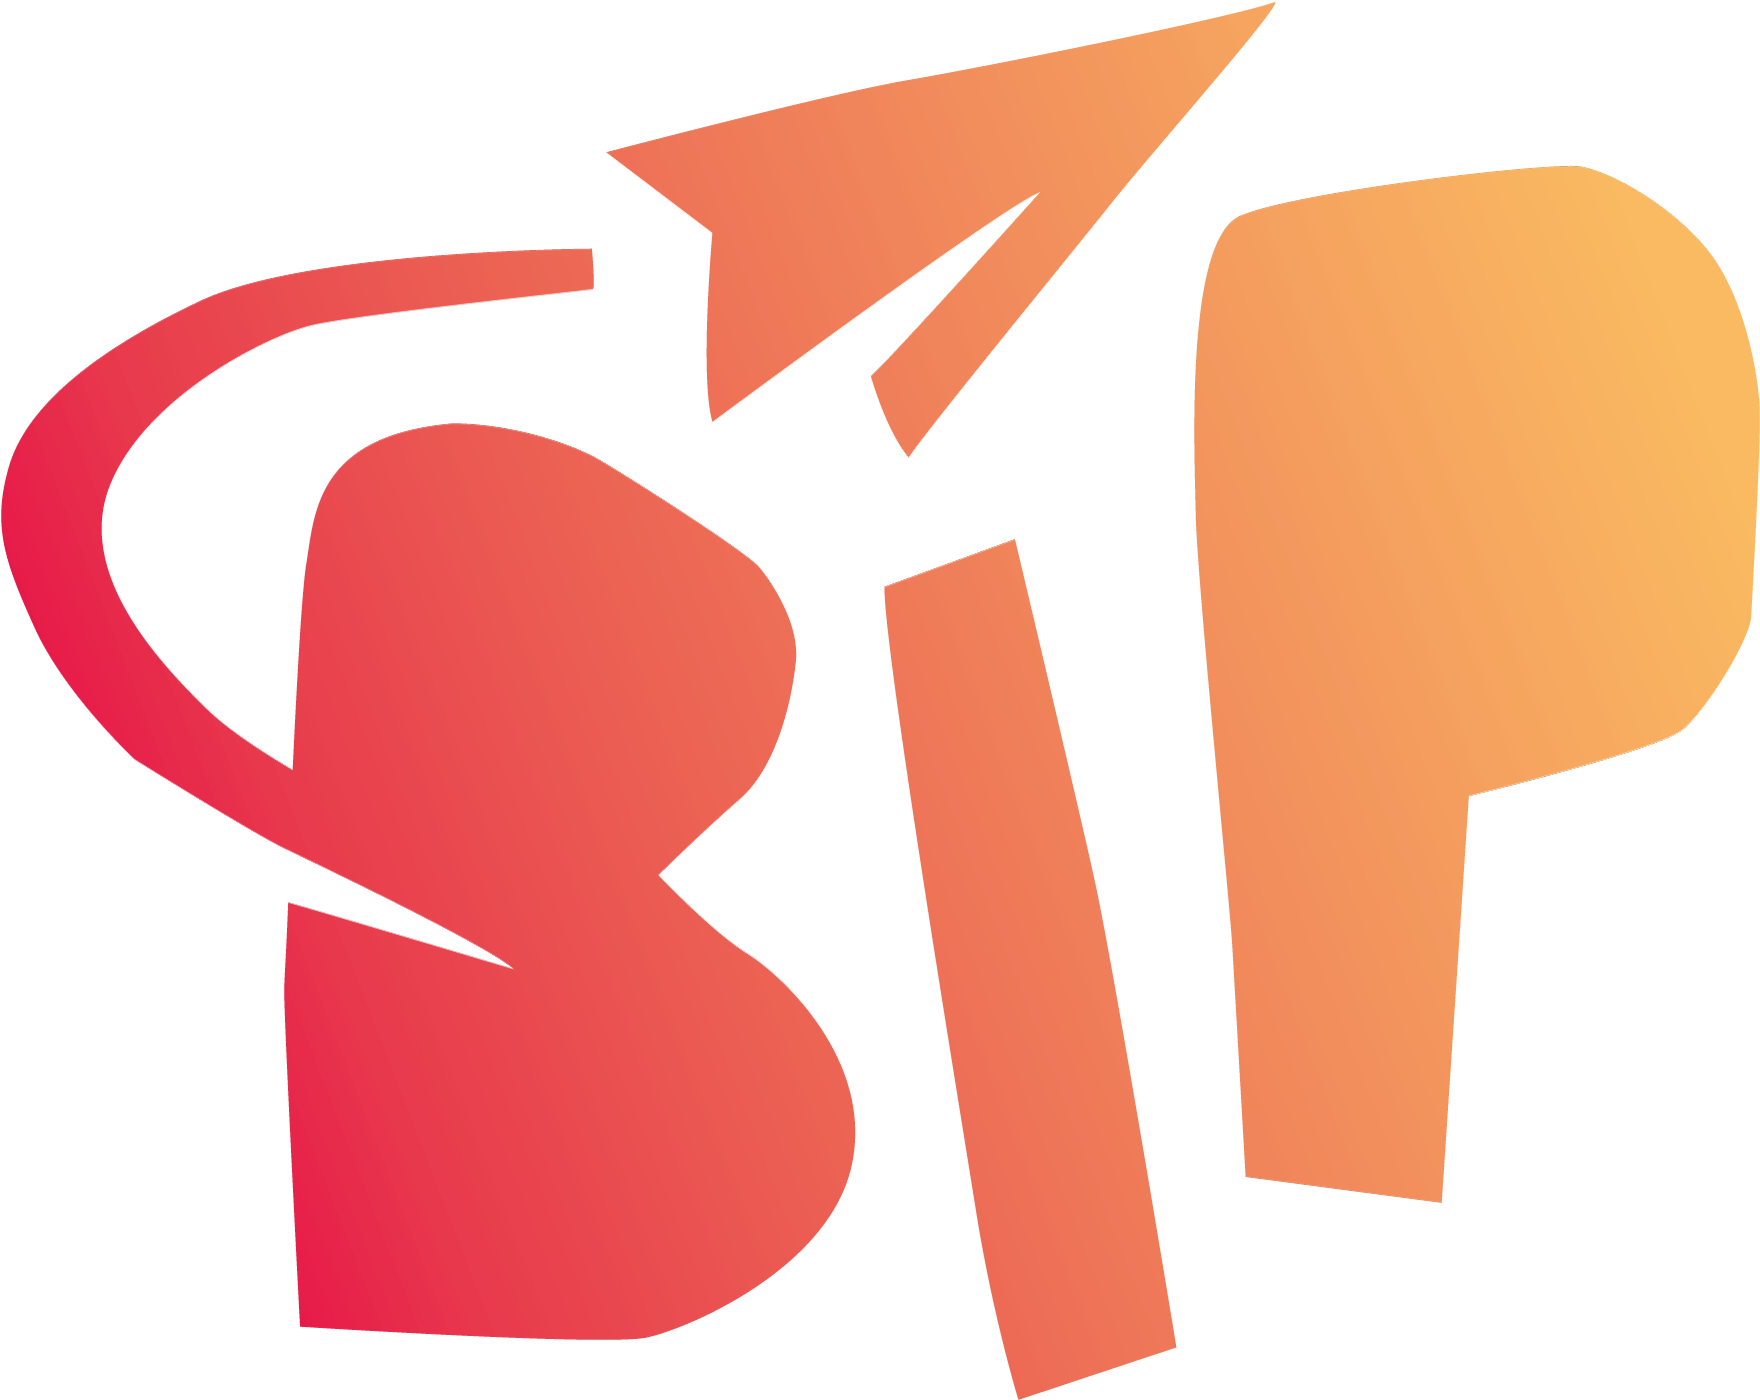 logo BIP SEUL fond transparent RVB V3